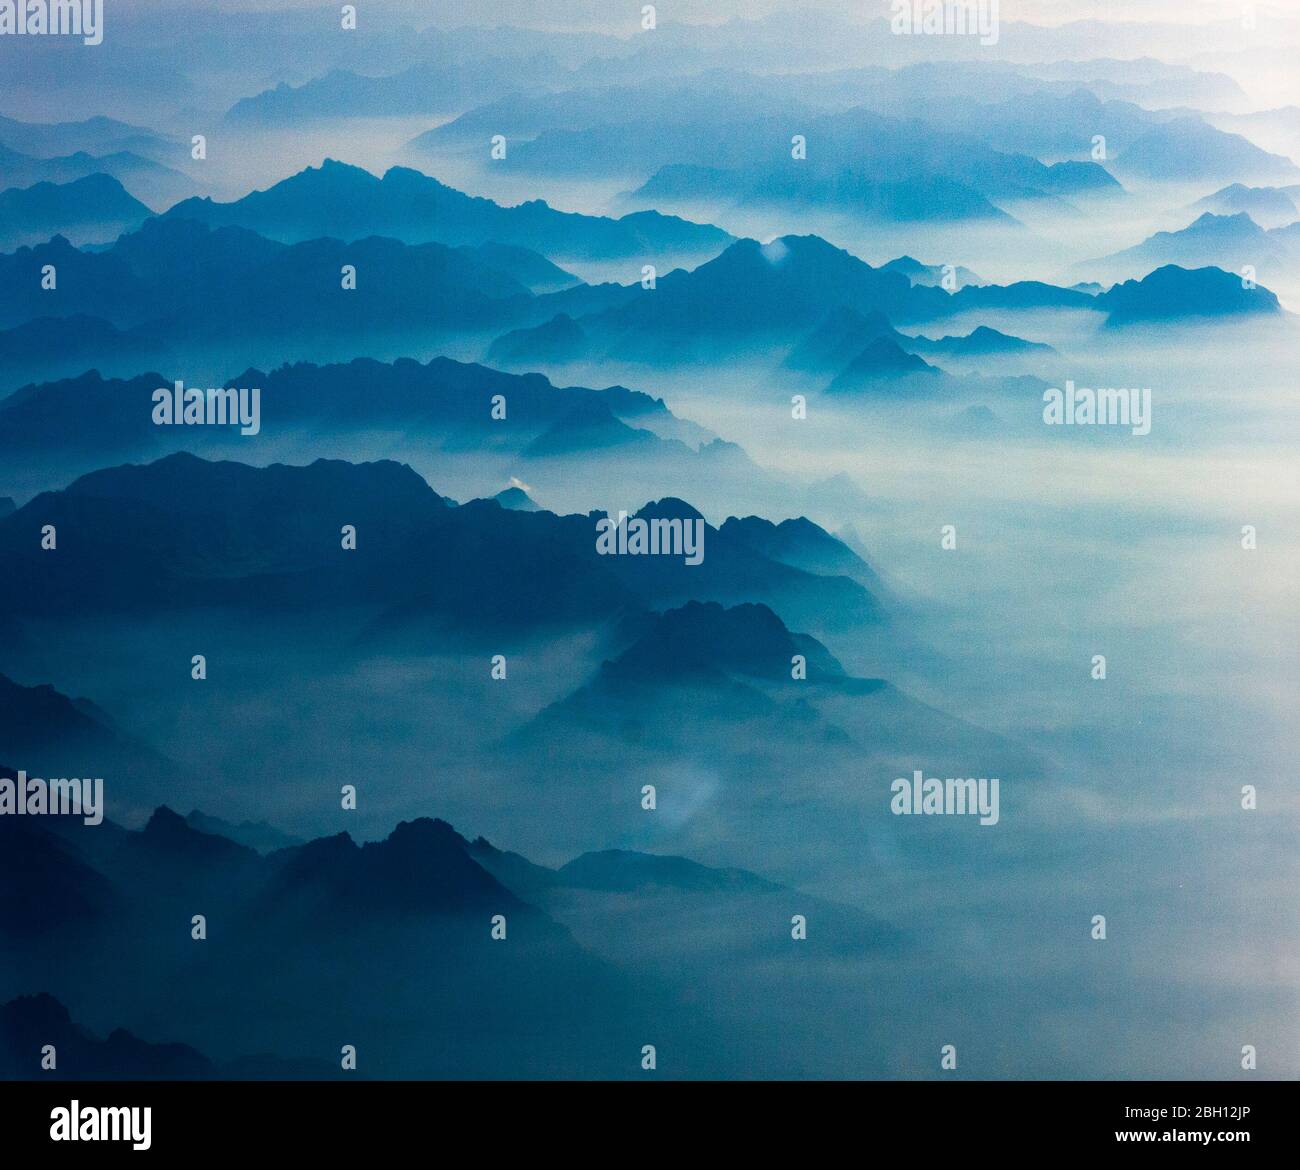 Aus Wolken und Nebel erheben sich die silhouettierten Berggipfel der europäischen Alpen, wie aus einem Flugzeug gesehen Stockfoto